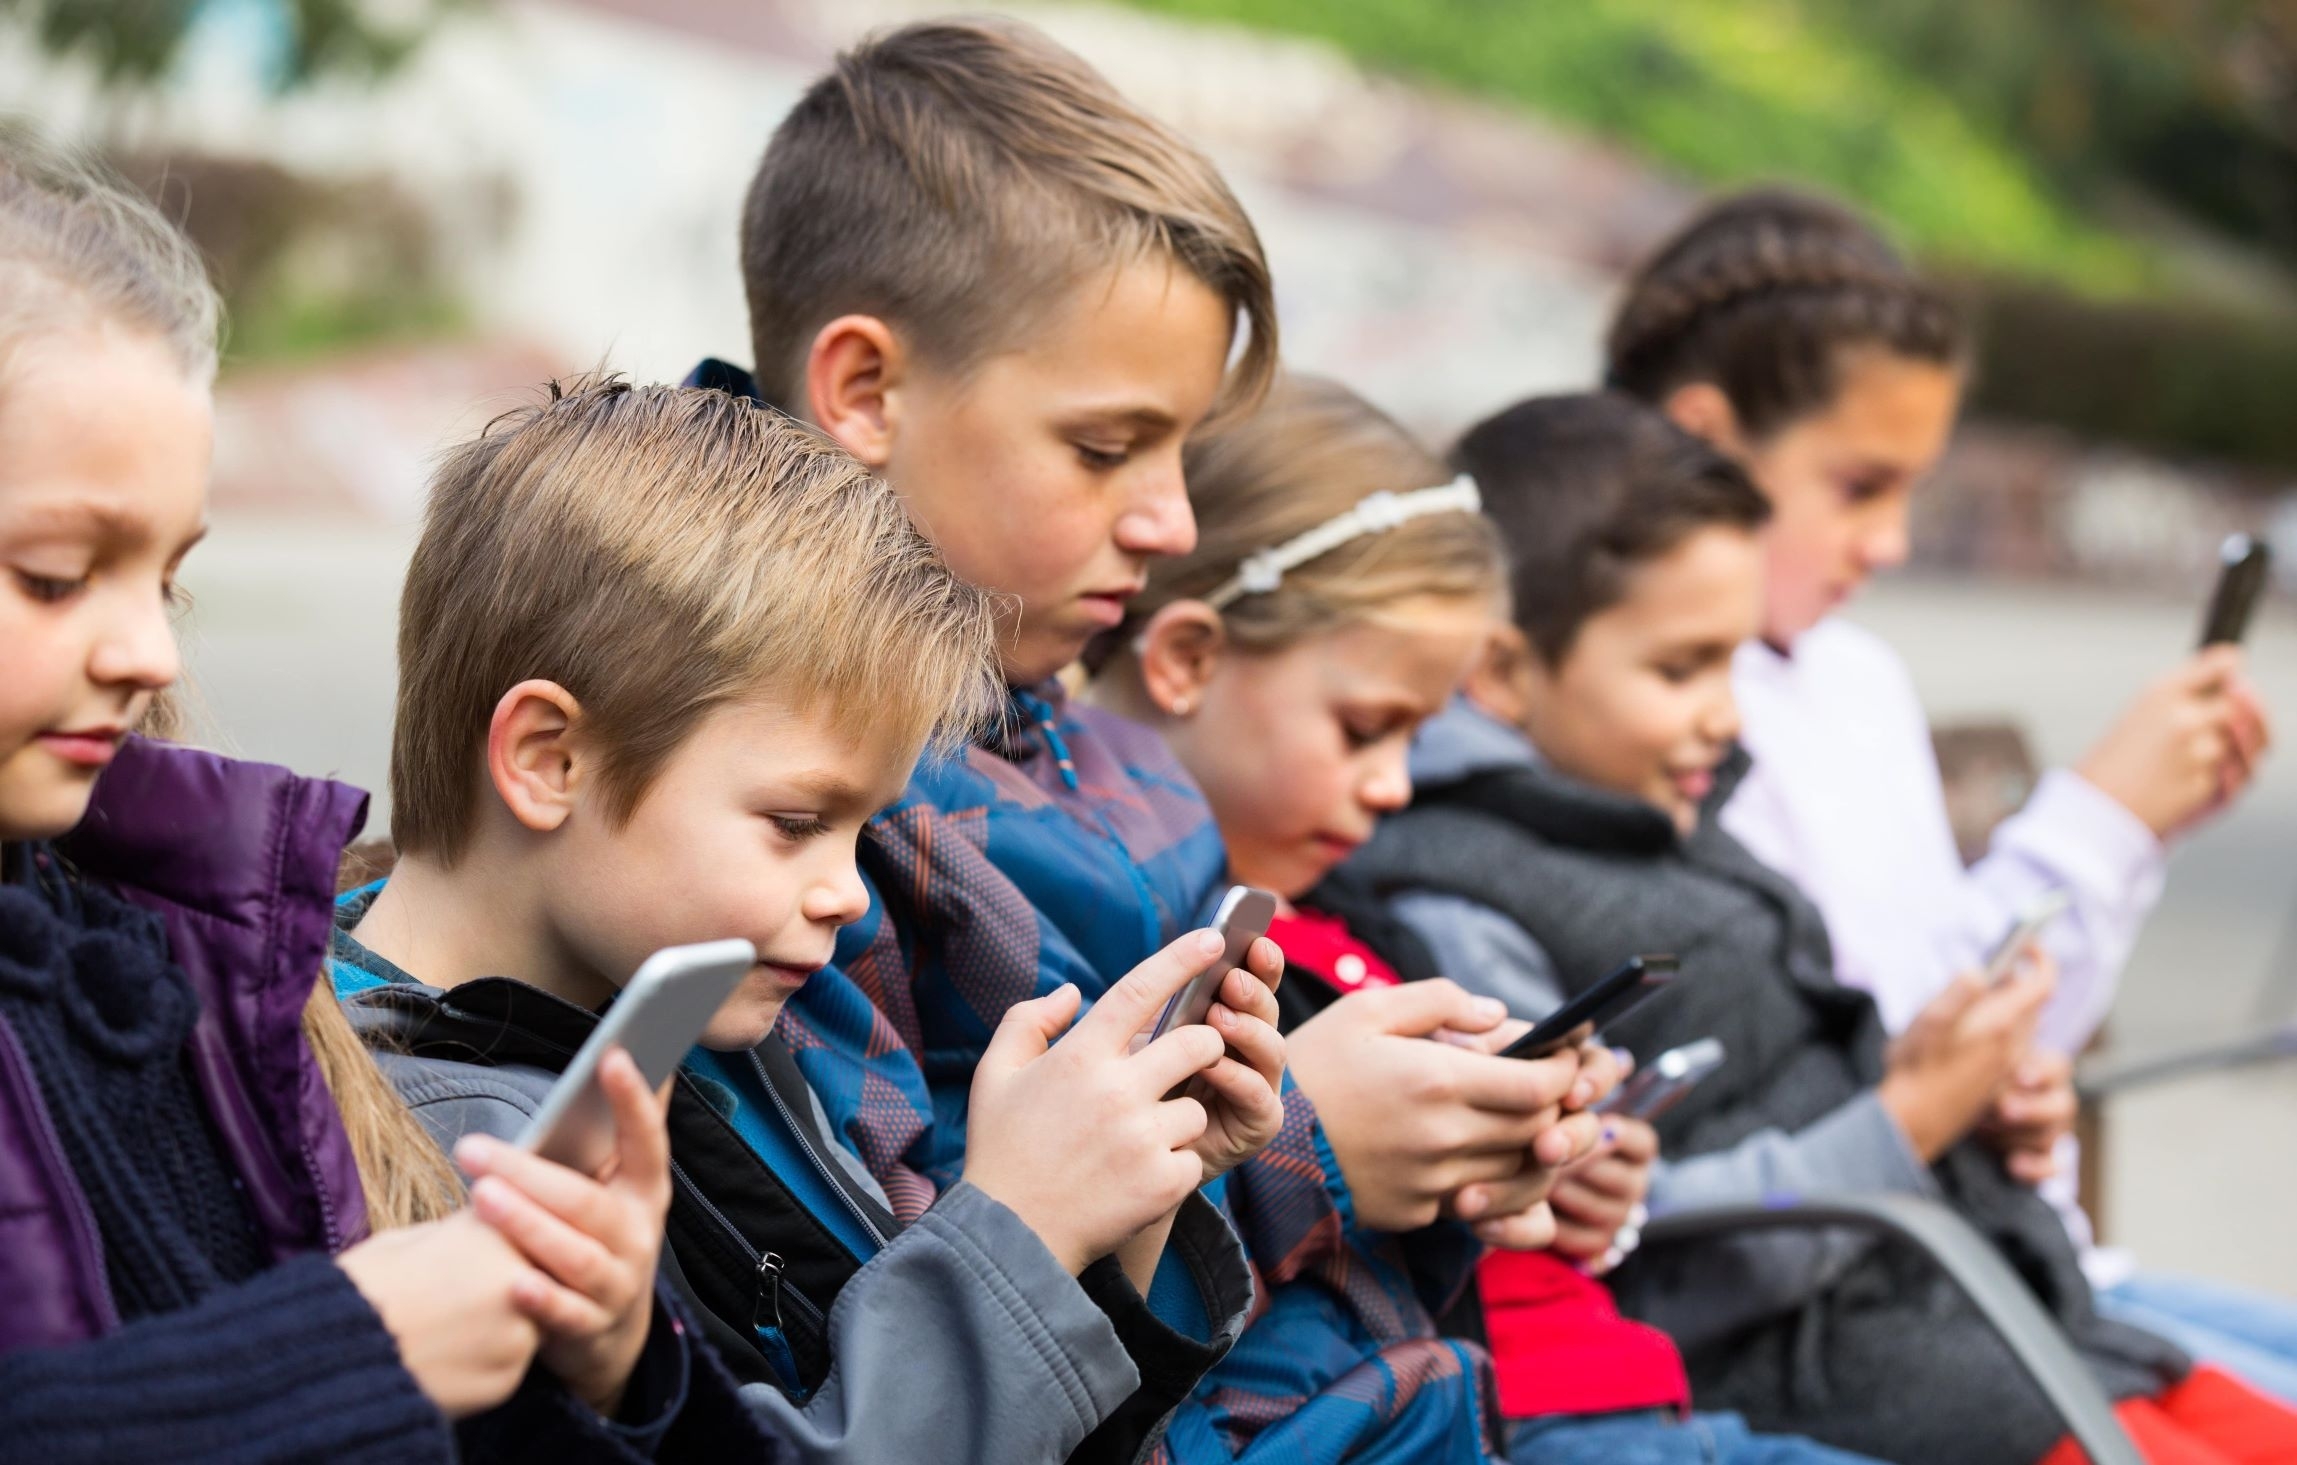 Vaikų apsauga socialiniuose tinkluose: 5 moksliniais tyrimais paremti patarimai